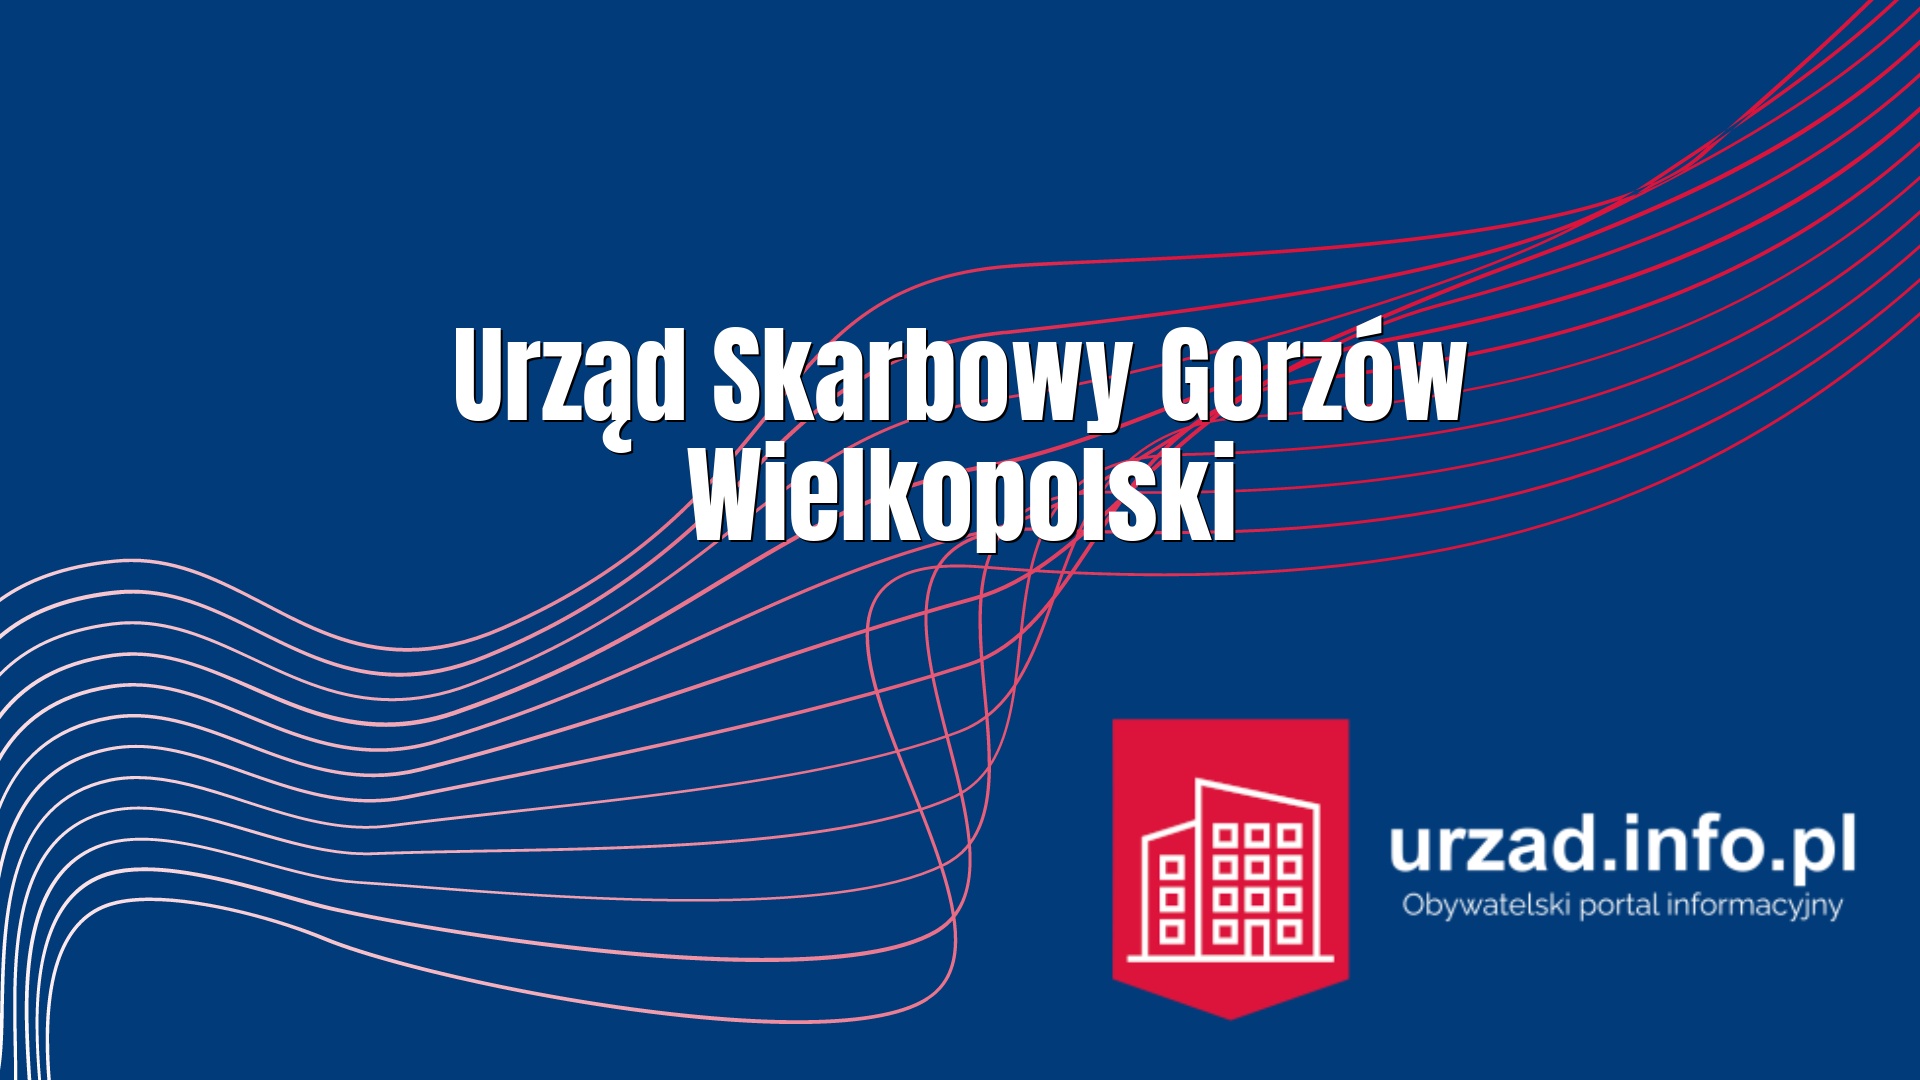 Urząd Skarbowy Gorzów Wielkopolski